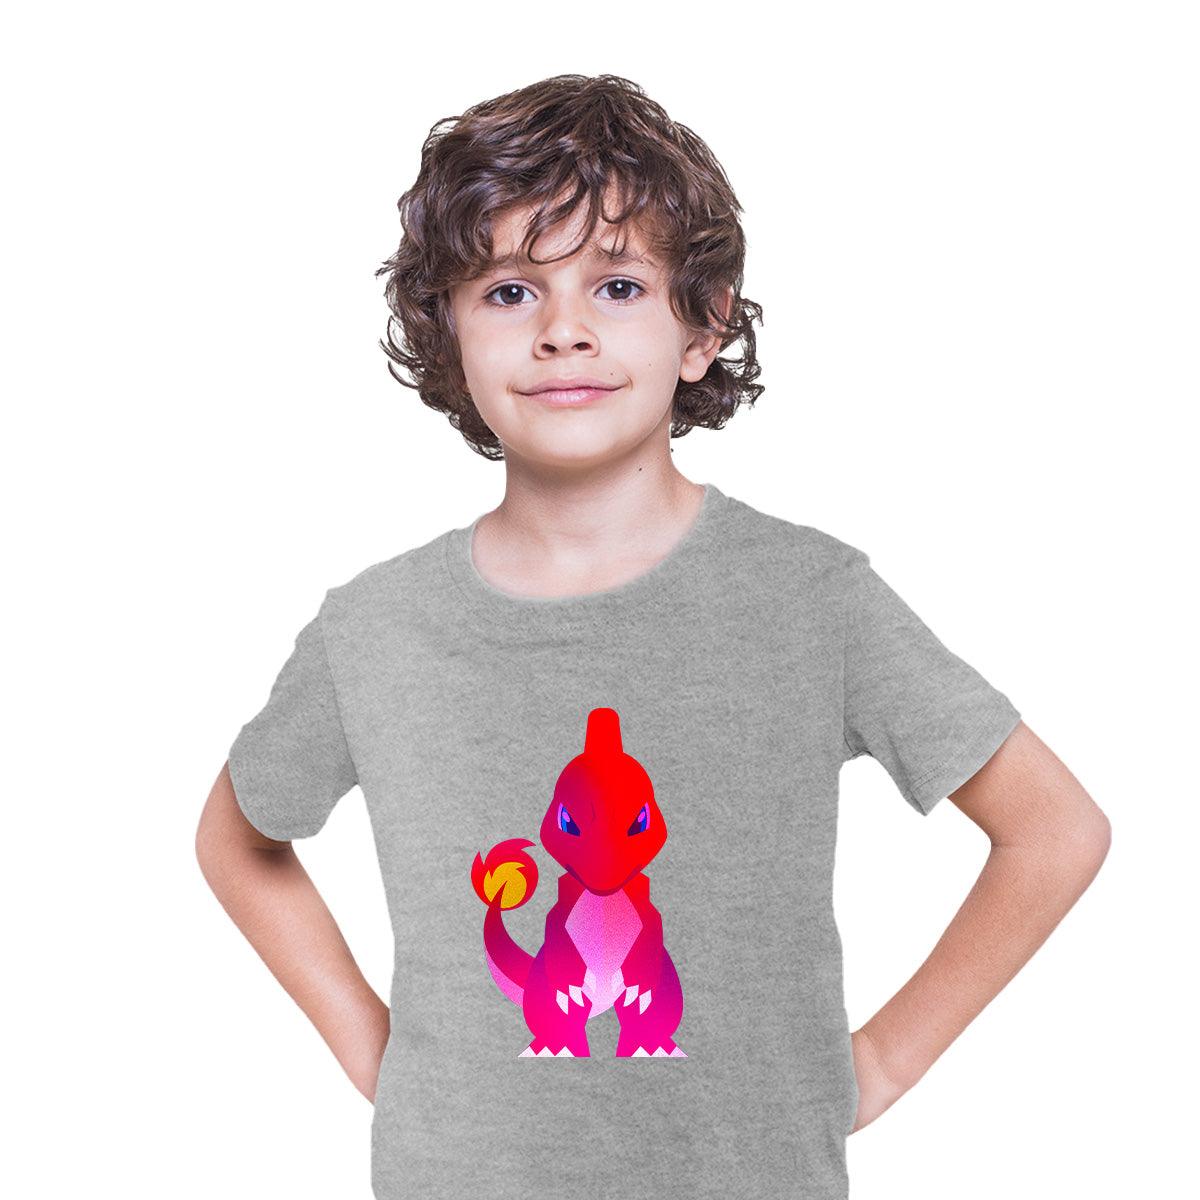 Charmeleon Pokemon Go T-shirt for Kids Boys Girls Brand New - Kuzi Tees